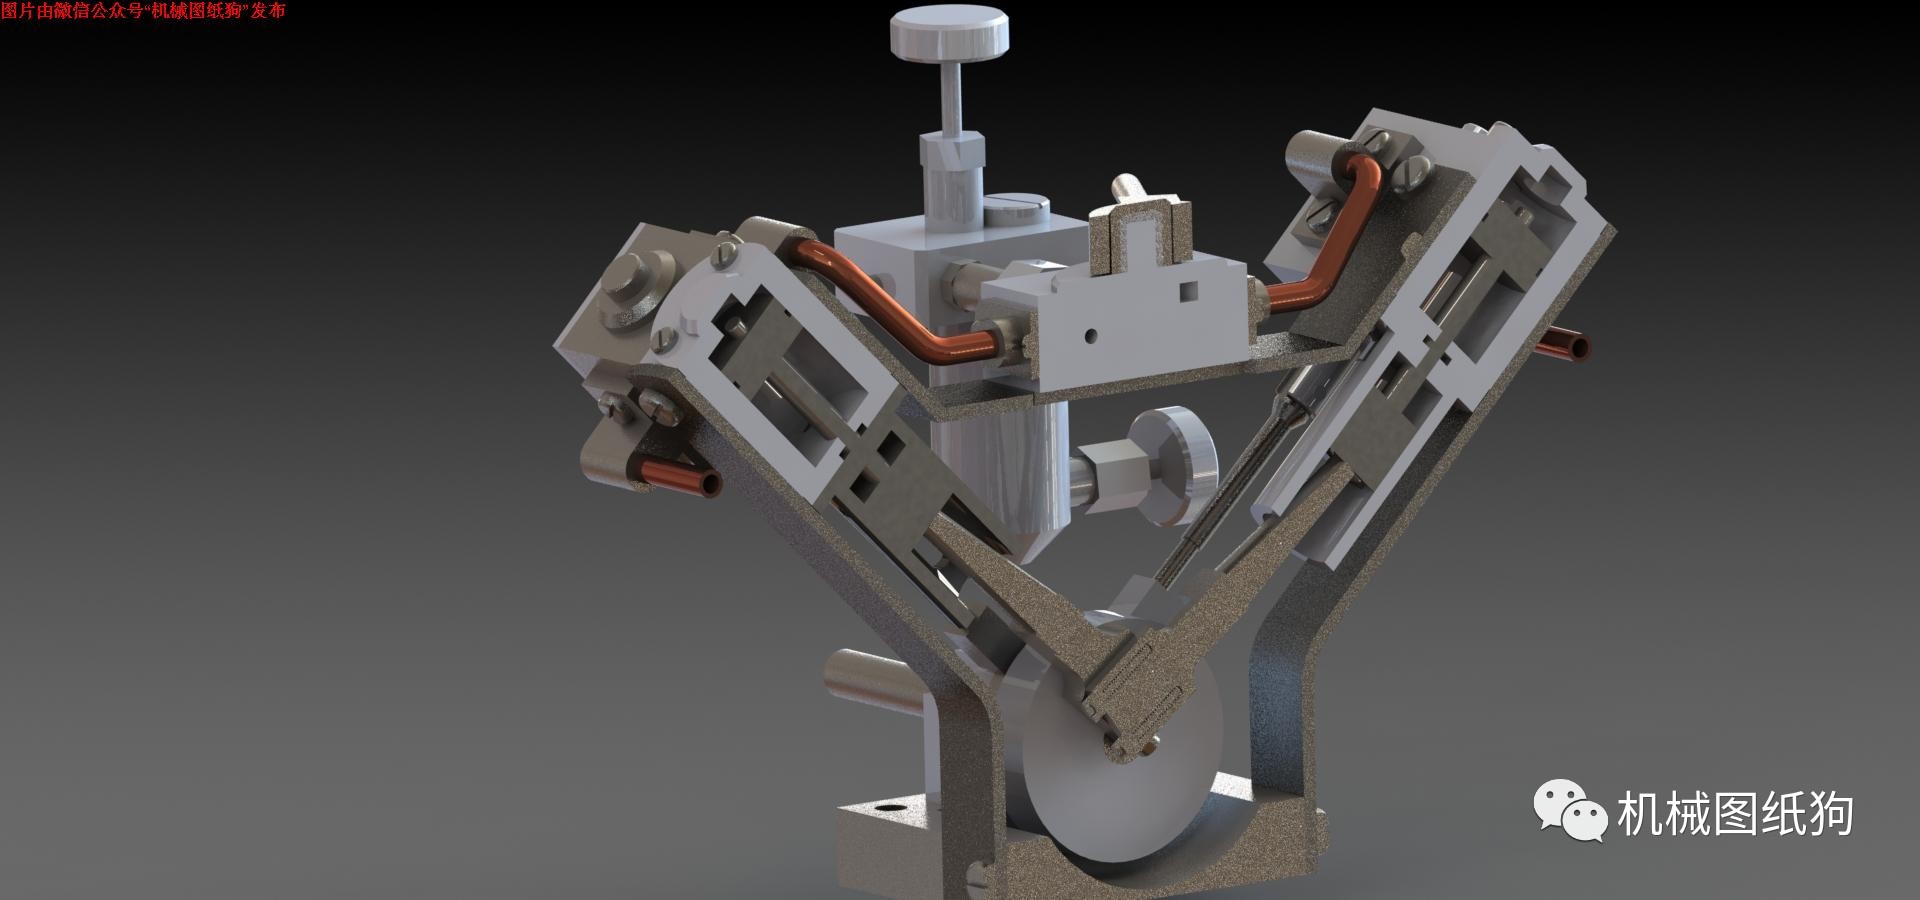 【发动机电机】garold posh设计的v型模型蒸汽机3d图纸 solidworks